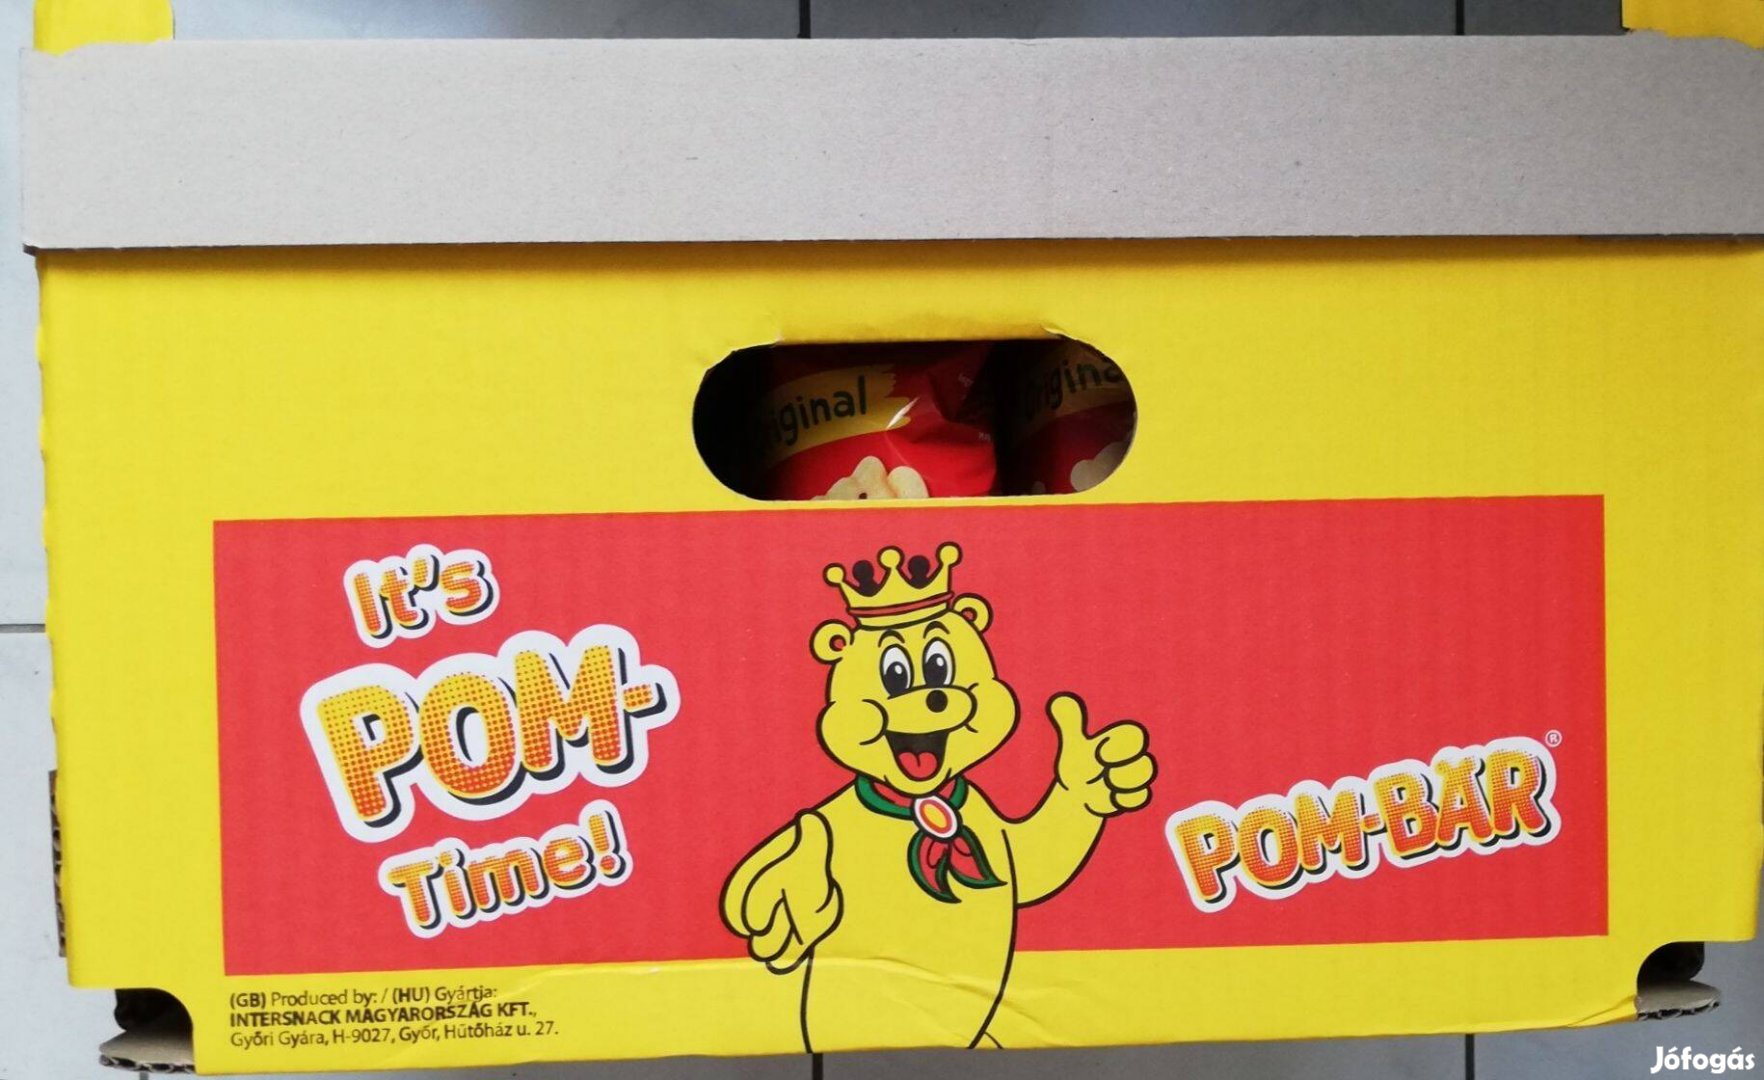 POM-BÄR Original Chips